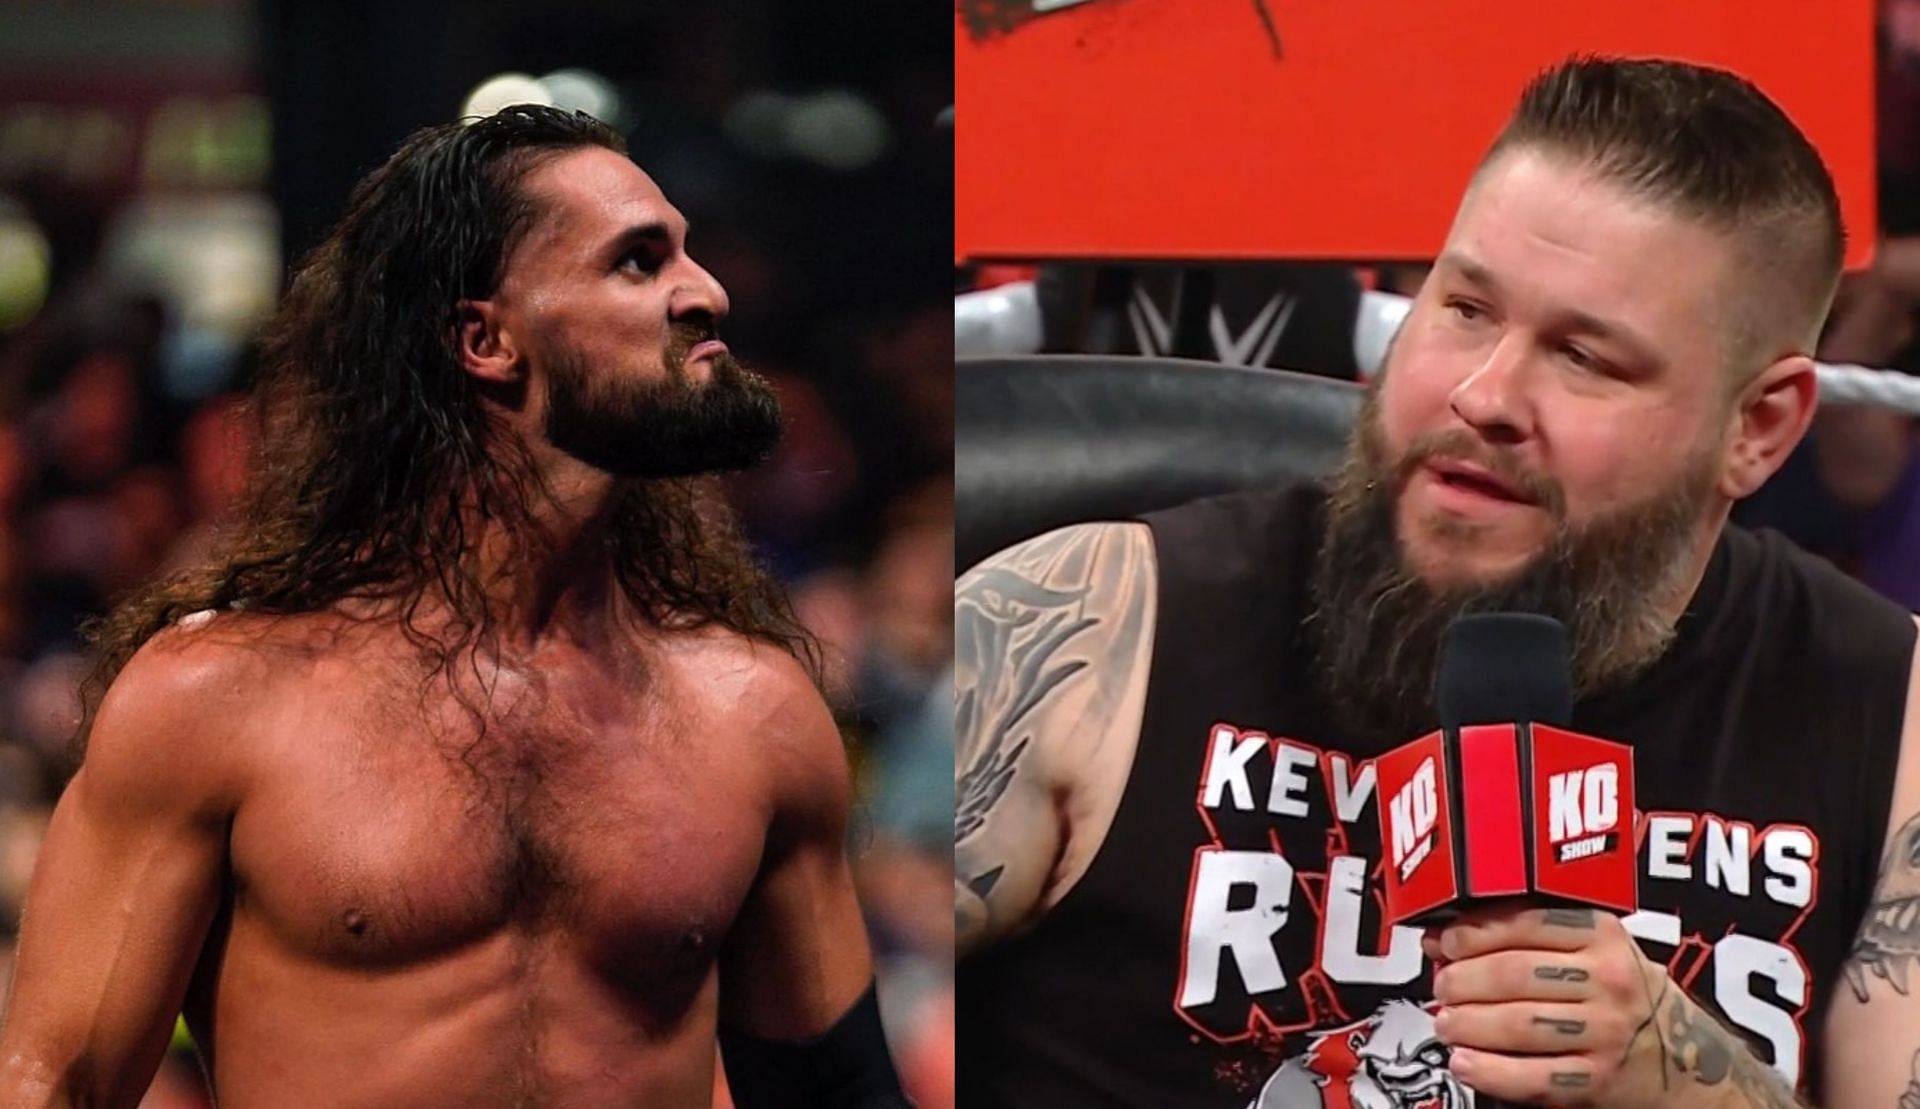 WWE Raw में केविन ओवेंस और सैथ रॉलिंस चर्चा का विषय रहे